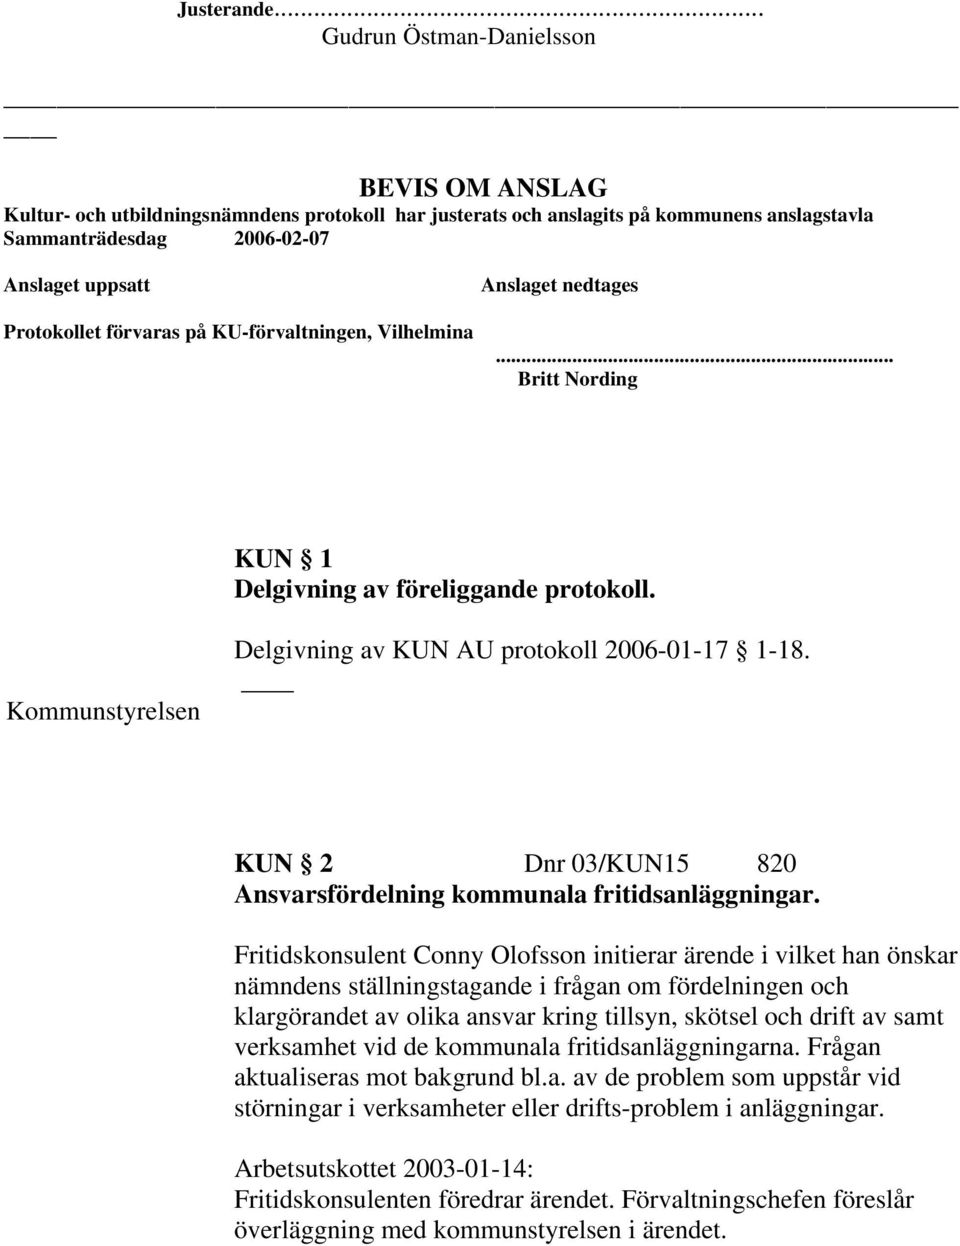 förvaras på KU-förvaltningen, Vilhelmina Anslaget nedtages... Britt Nording KUN 1 Delgivning av föreliggande protokoll. Kommunstyrelsen Delgivning av KUN AU protokoll 2006-01-17 1-18.